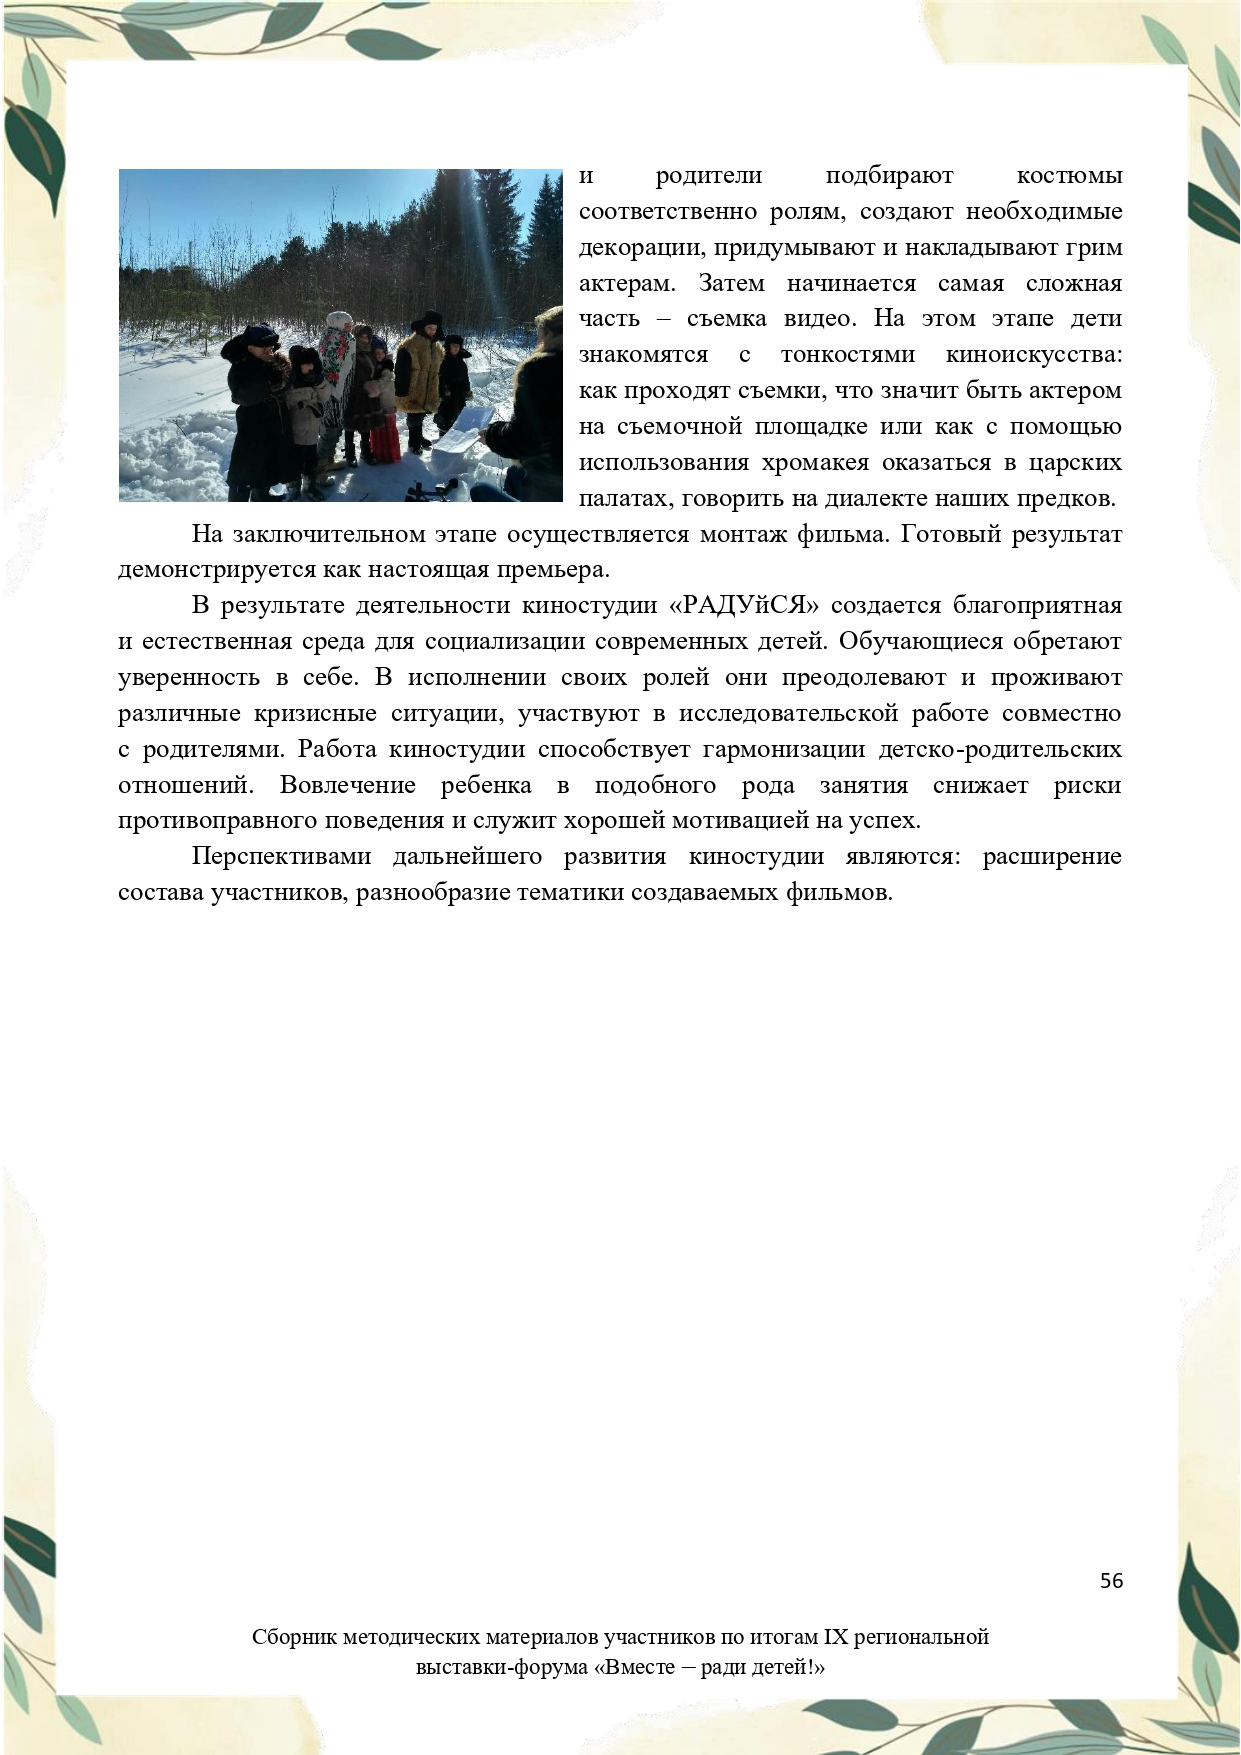 Sbornik_metodicheskikh_materialov_uchastnikov_IX_regionalnoy_vystavki-foruma_Vmeste__radi_detey_33__2023_page-0056